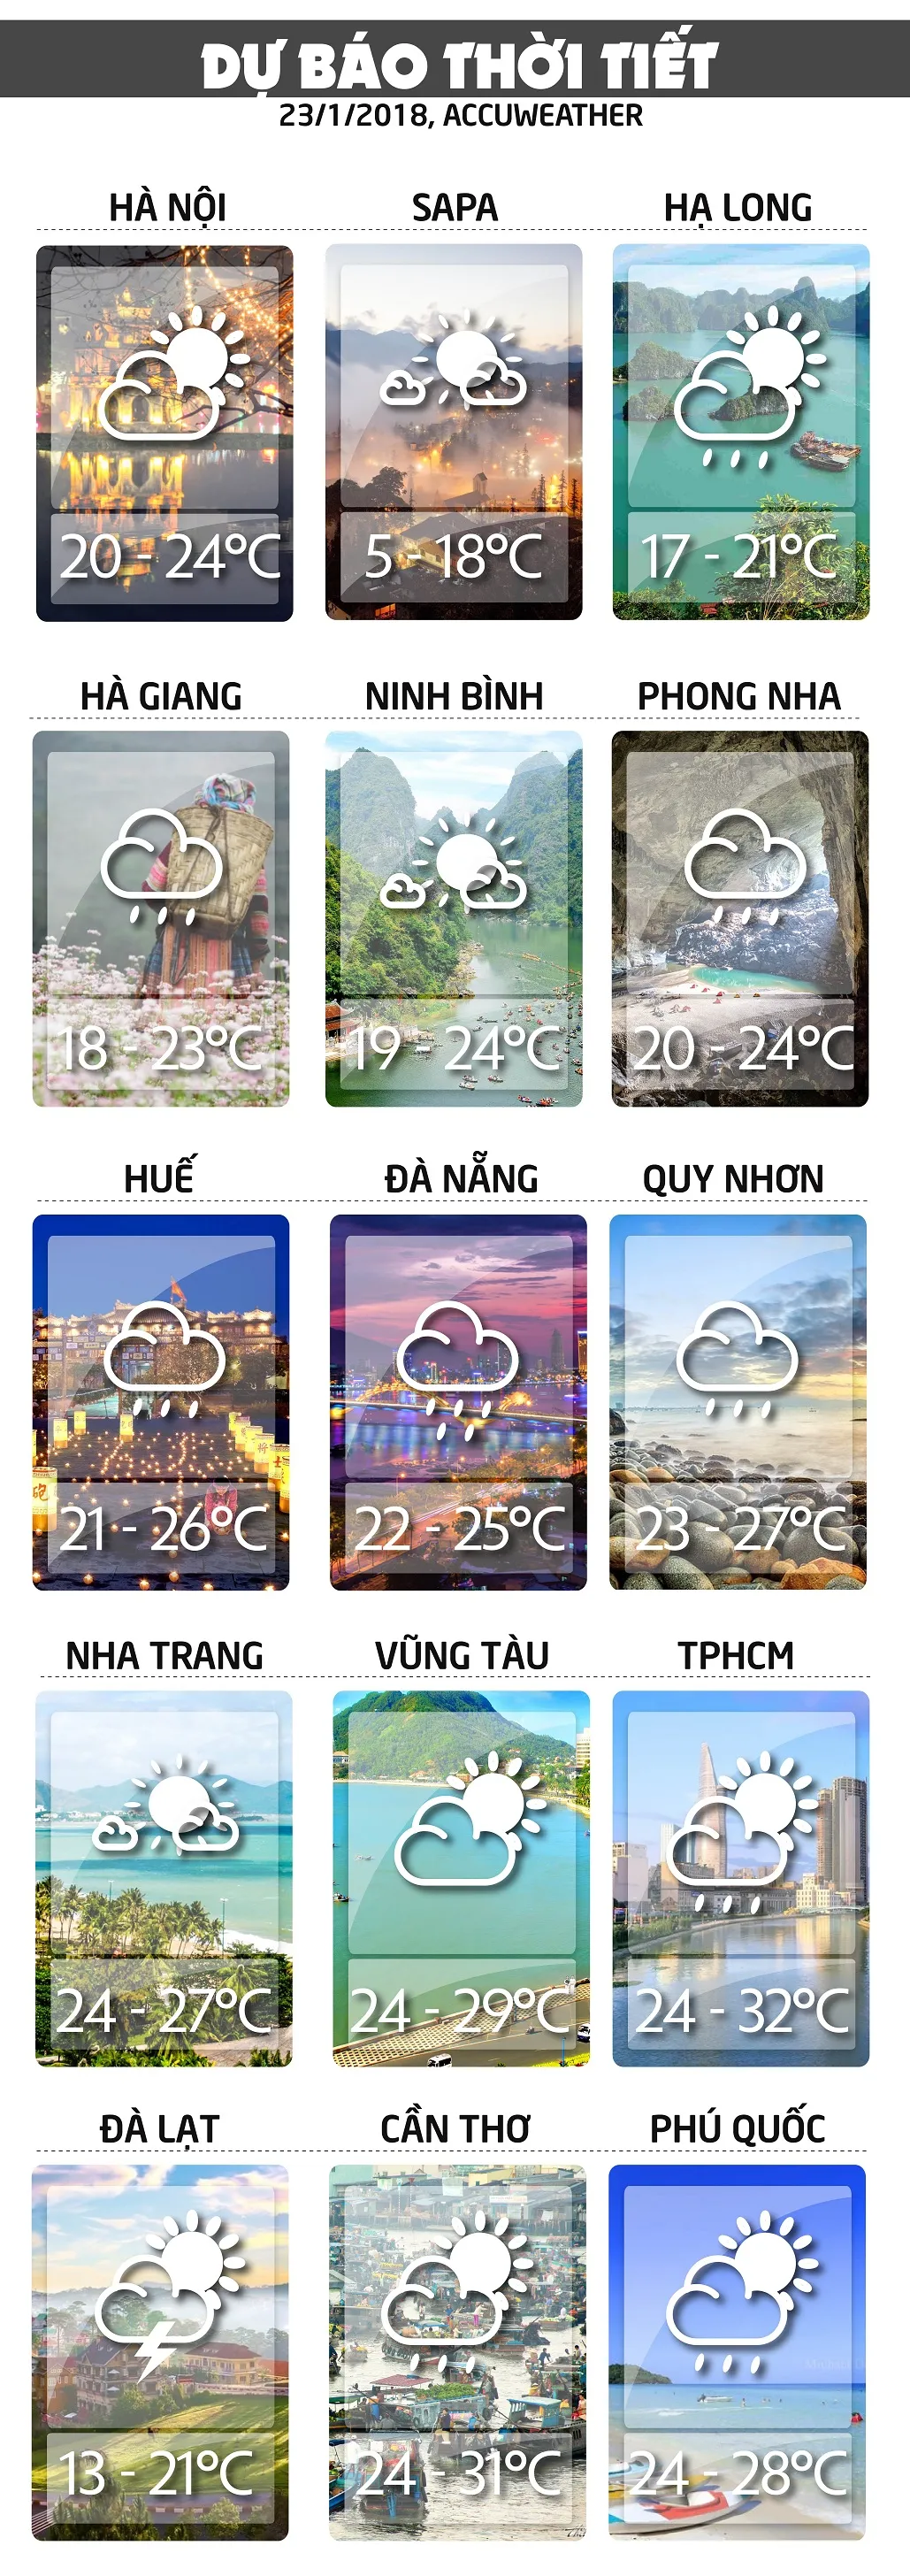 Dự báo thời tiết ngày mai www.voh.com.vn